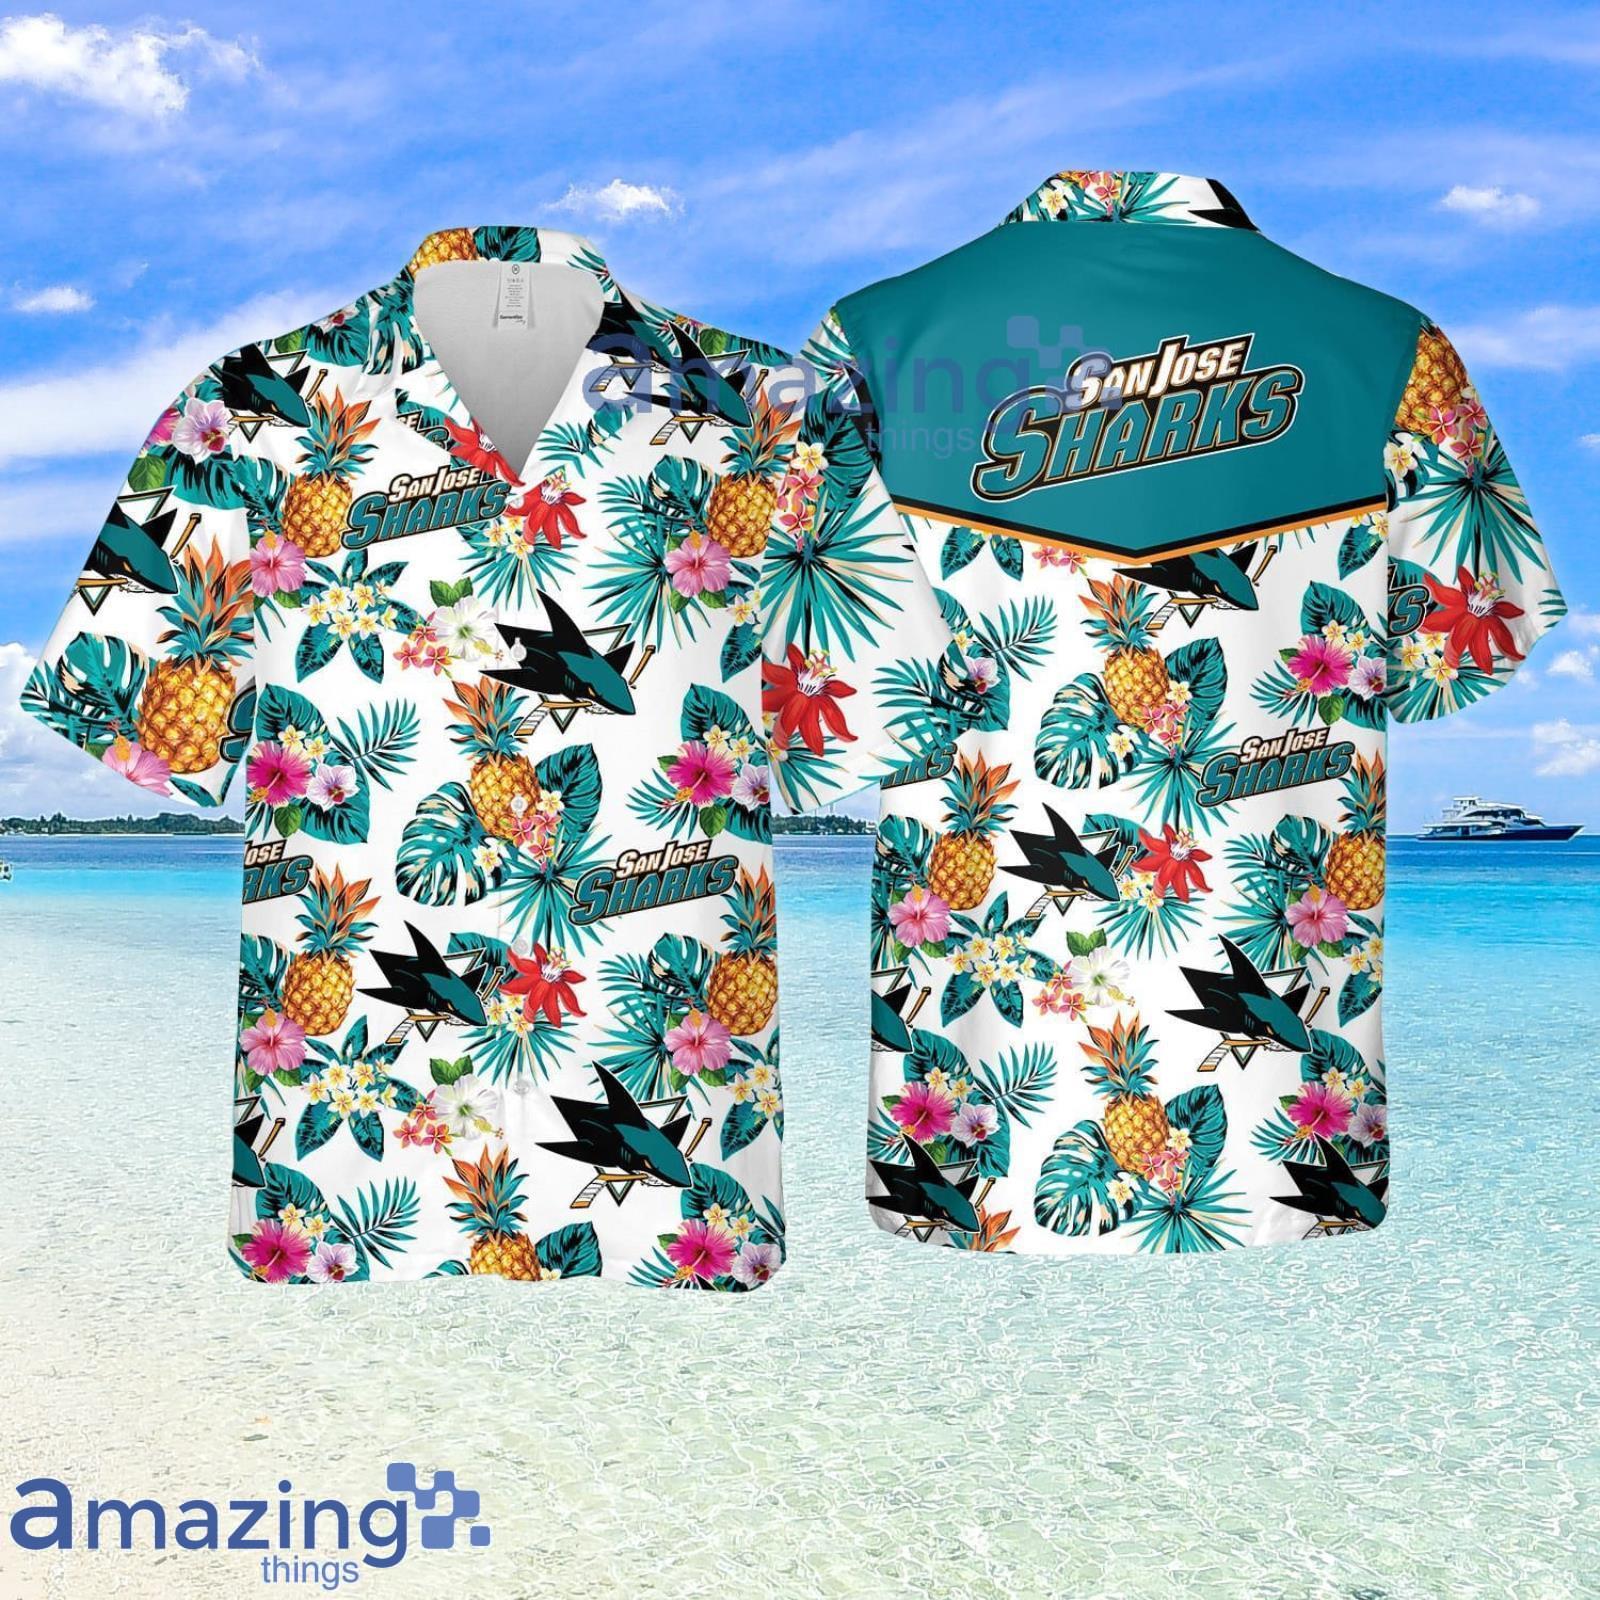 San Jose Sharks Logo Tropical Summer Hawaiian Shirt - Binteez